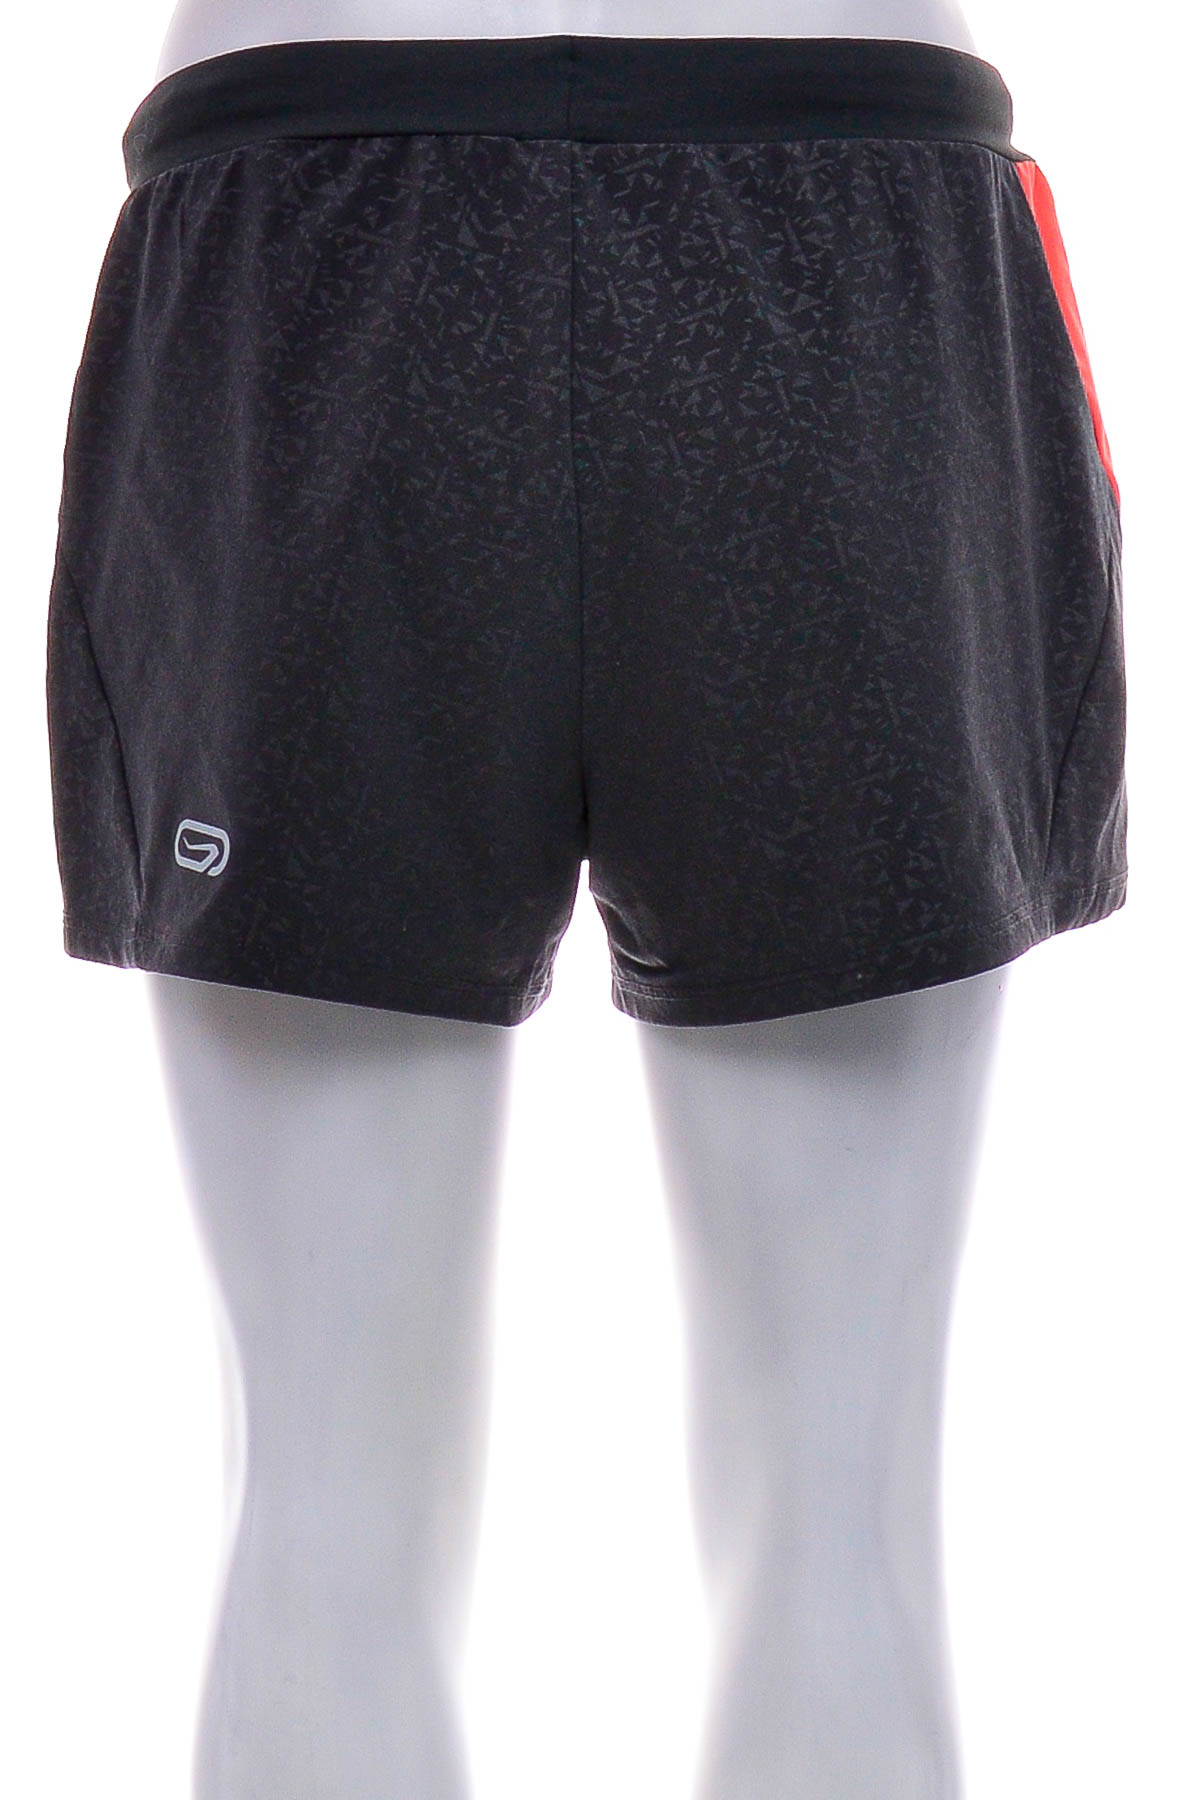 Female shorts - Oxylane - 1